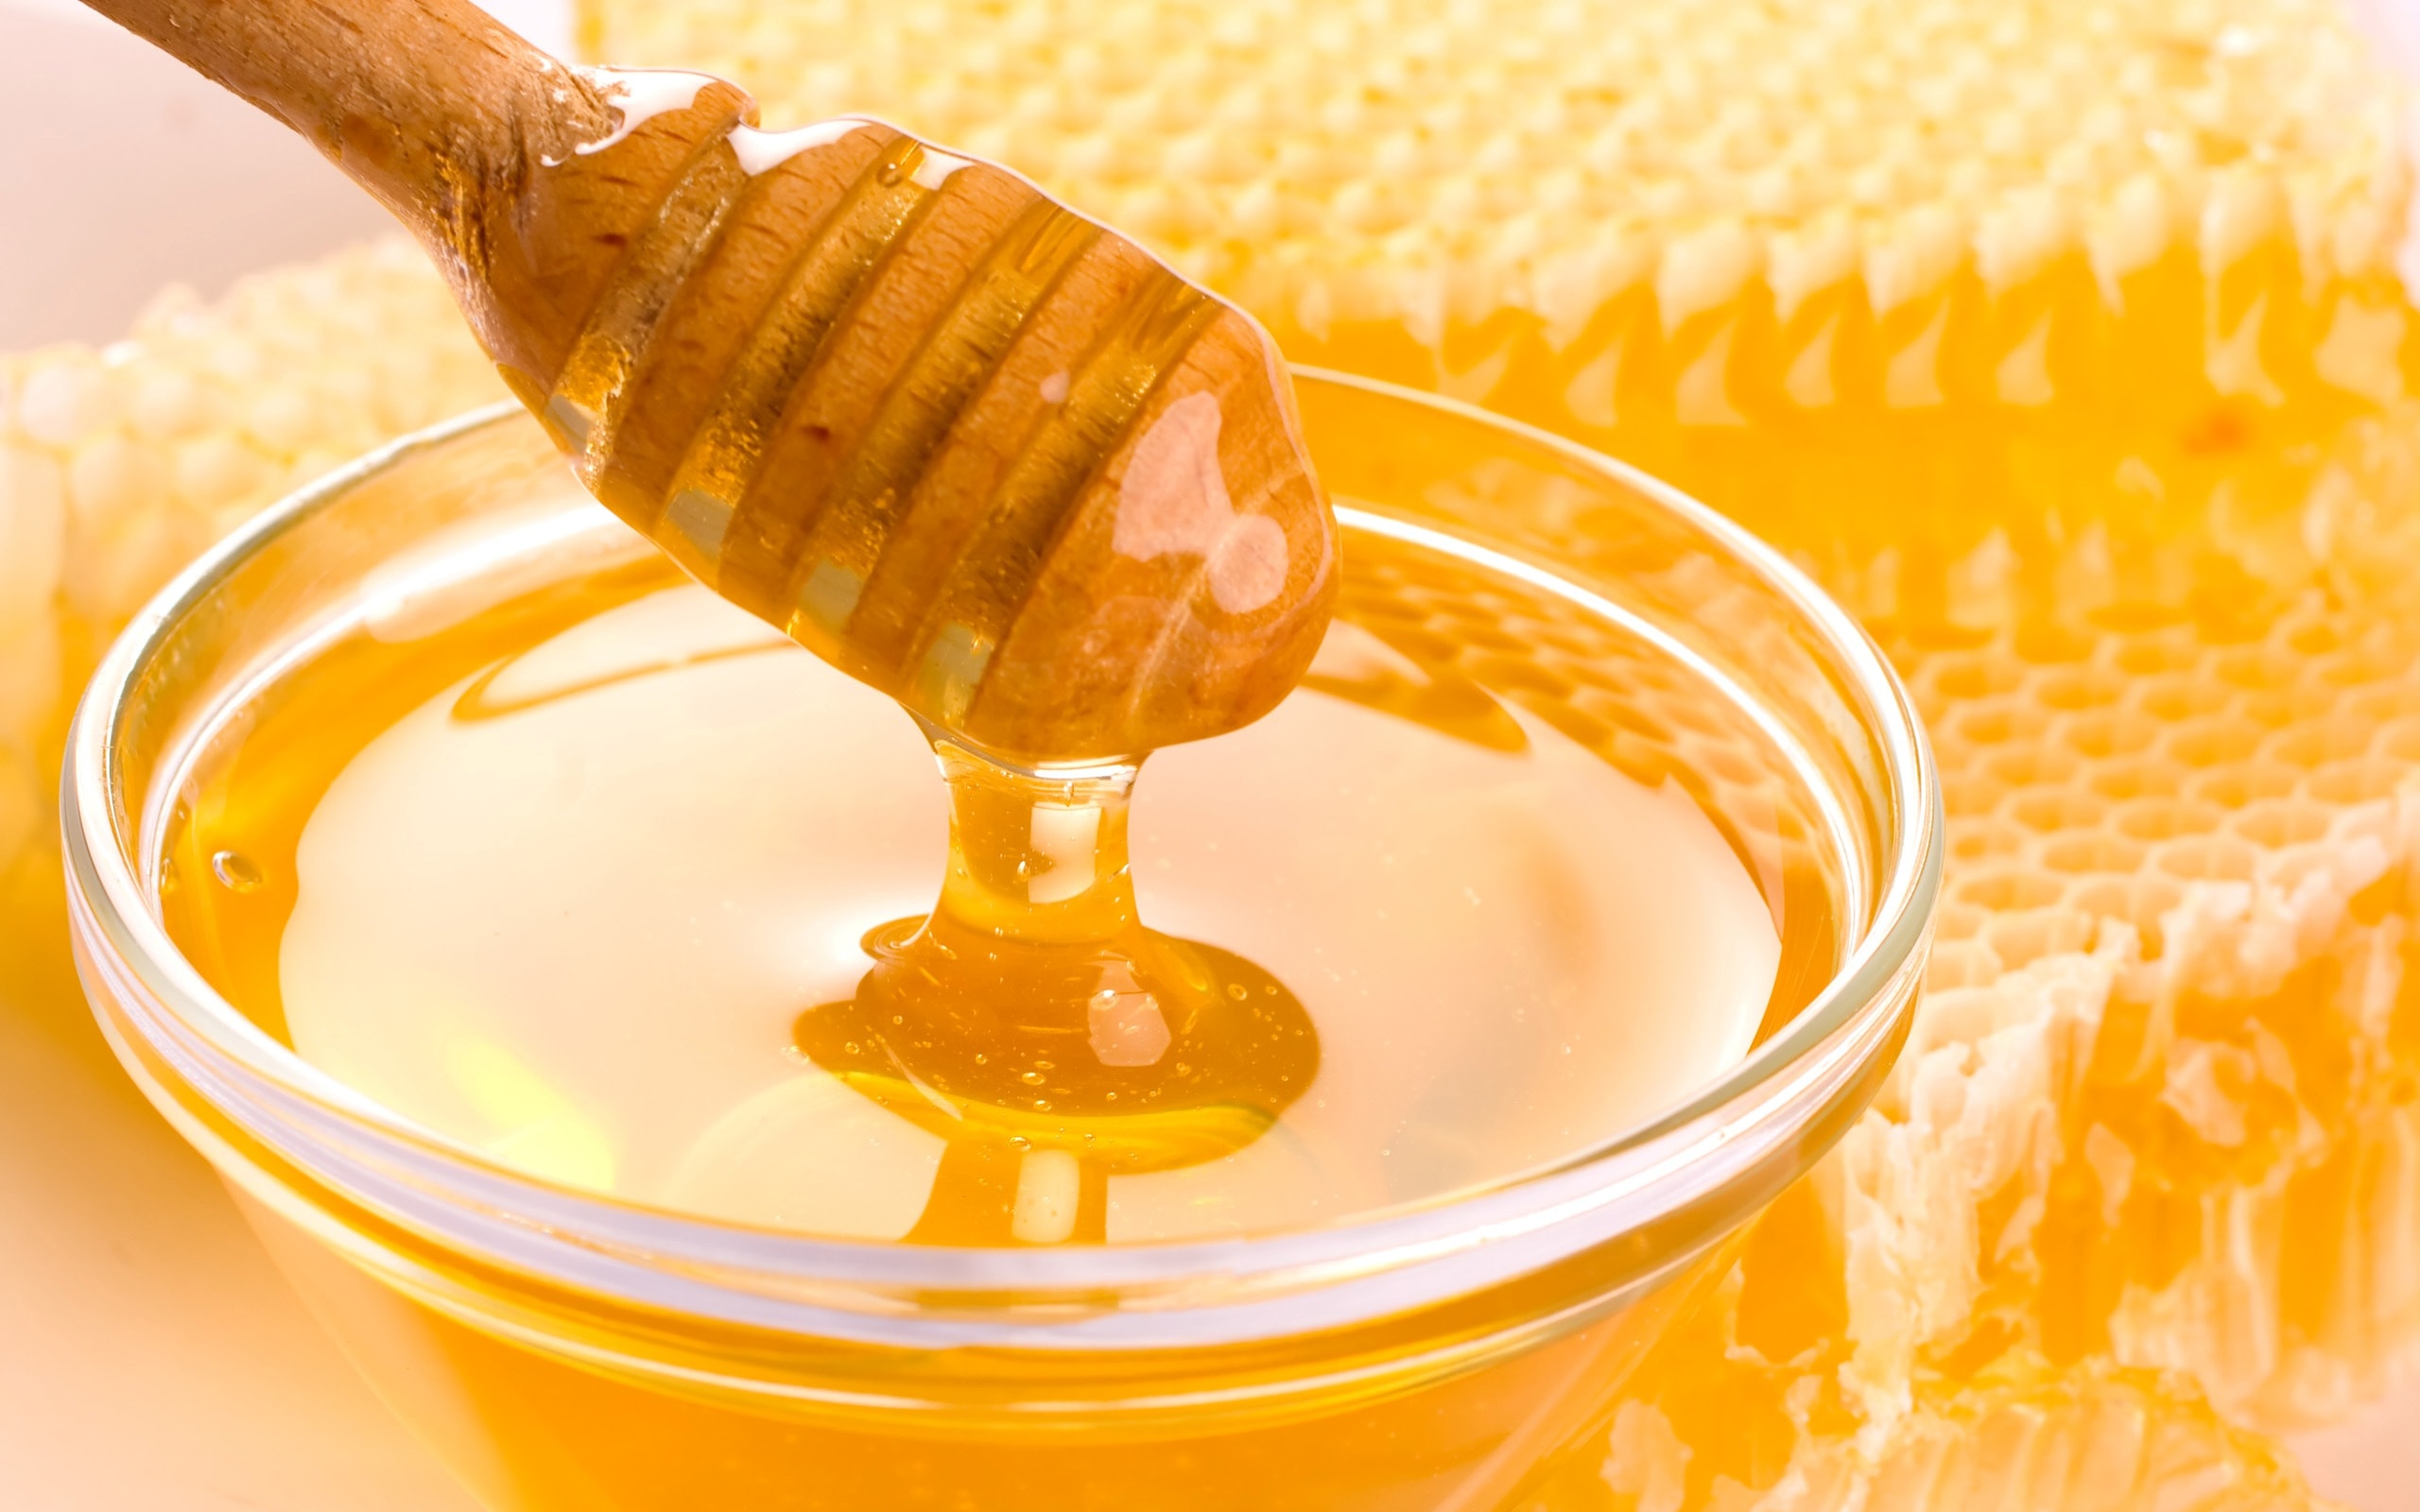 تجربتي في علاج البواسير بالعسل